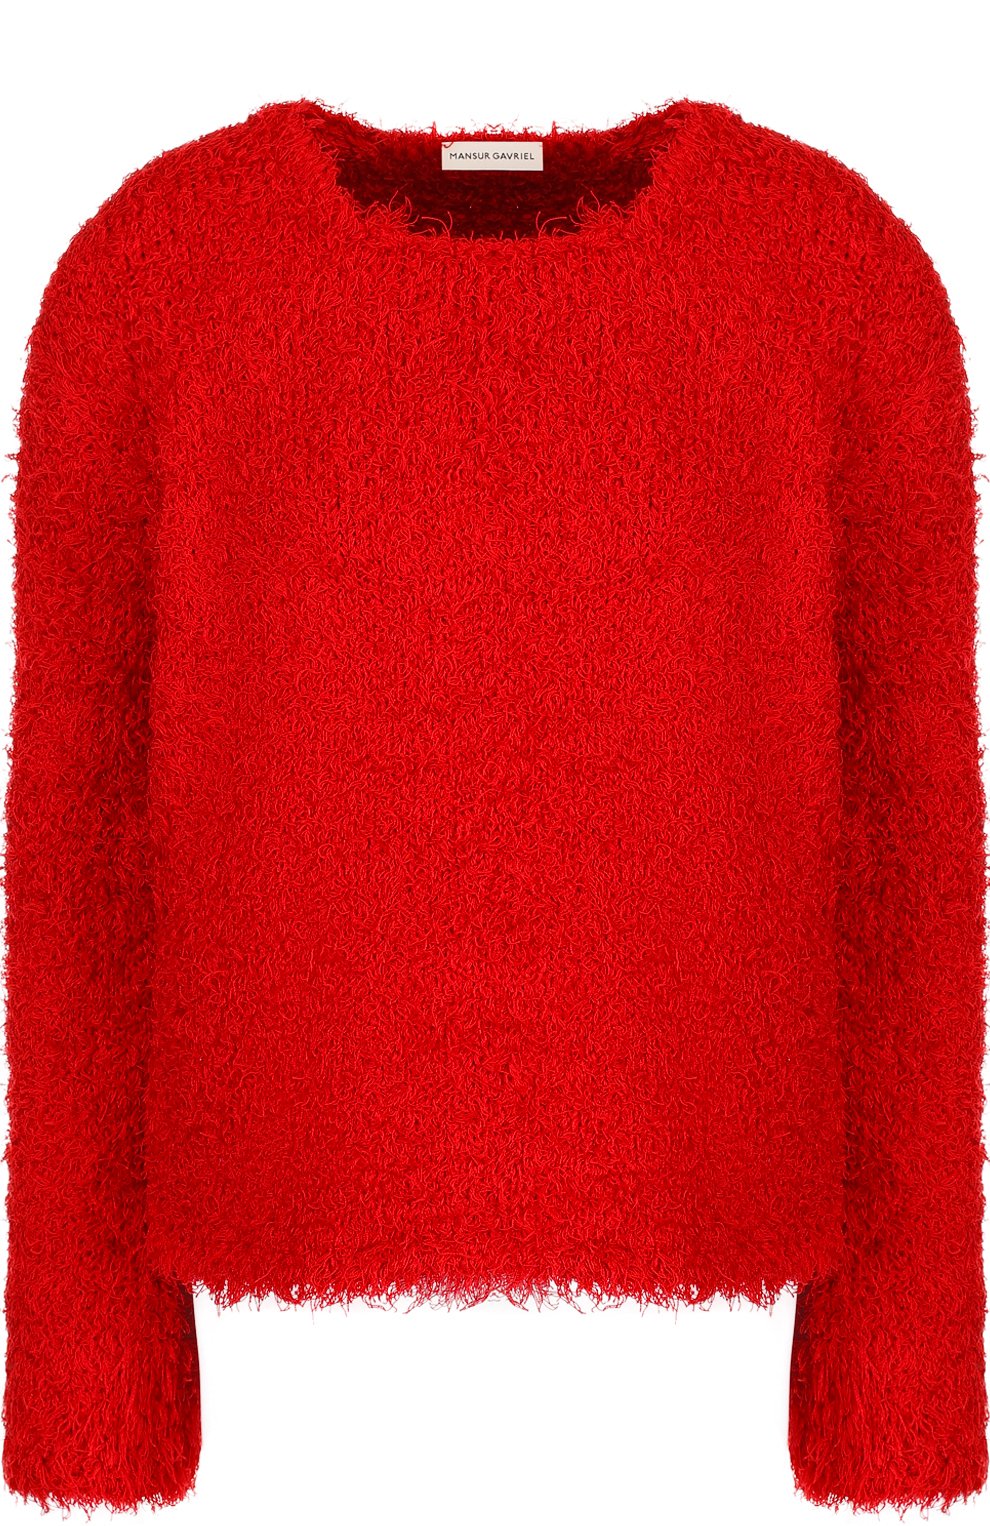 Трикотаж Mansur Gavriel, Шелковый пуловер свободного кроя с круглым вырезом Mansur Gavriel, Италия, Красный, Шелк: 100%;, 3449620  - купить